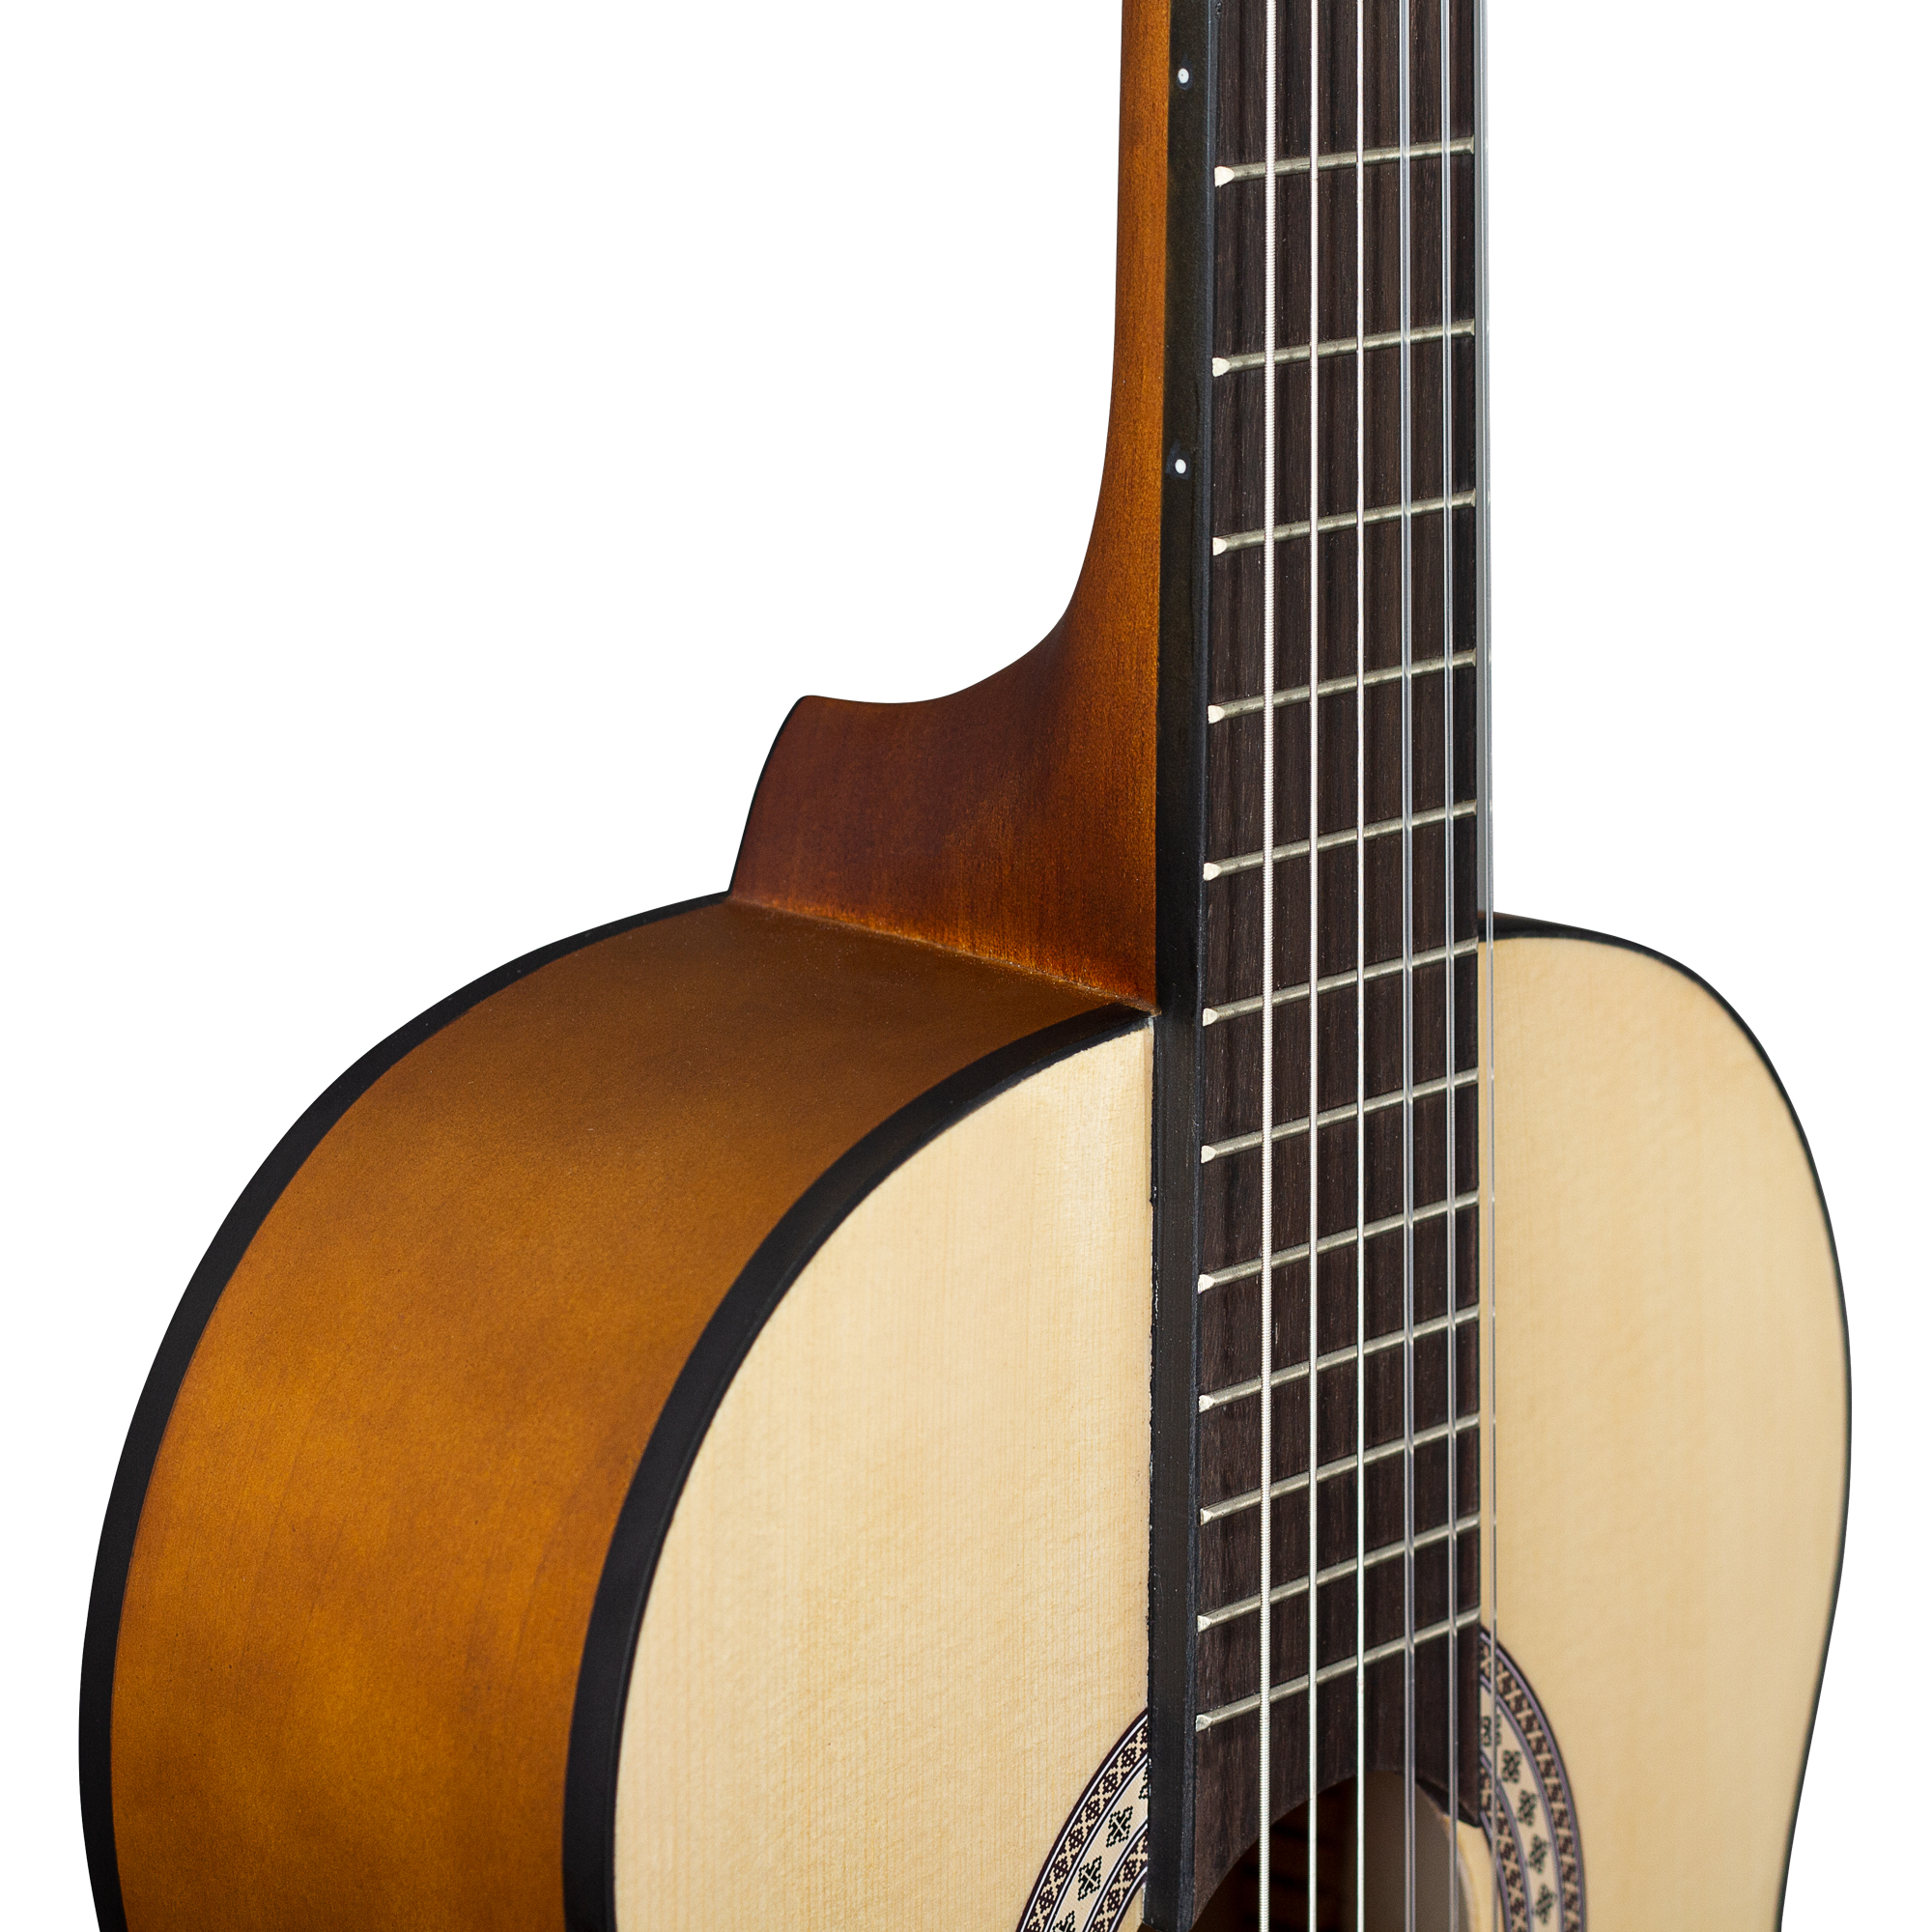 Cascha HH-2137 Student Series Классическая гитара 4/4, с чехлом и 3 медиаторами. купить в prostore.me